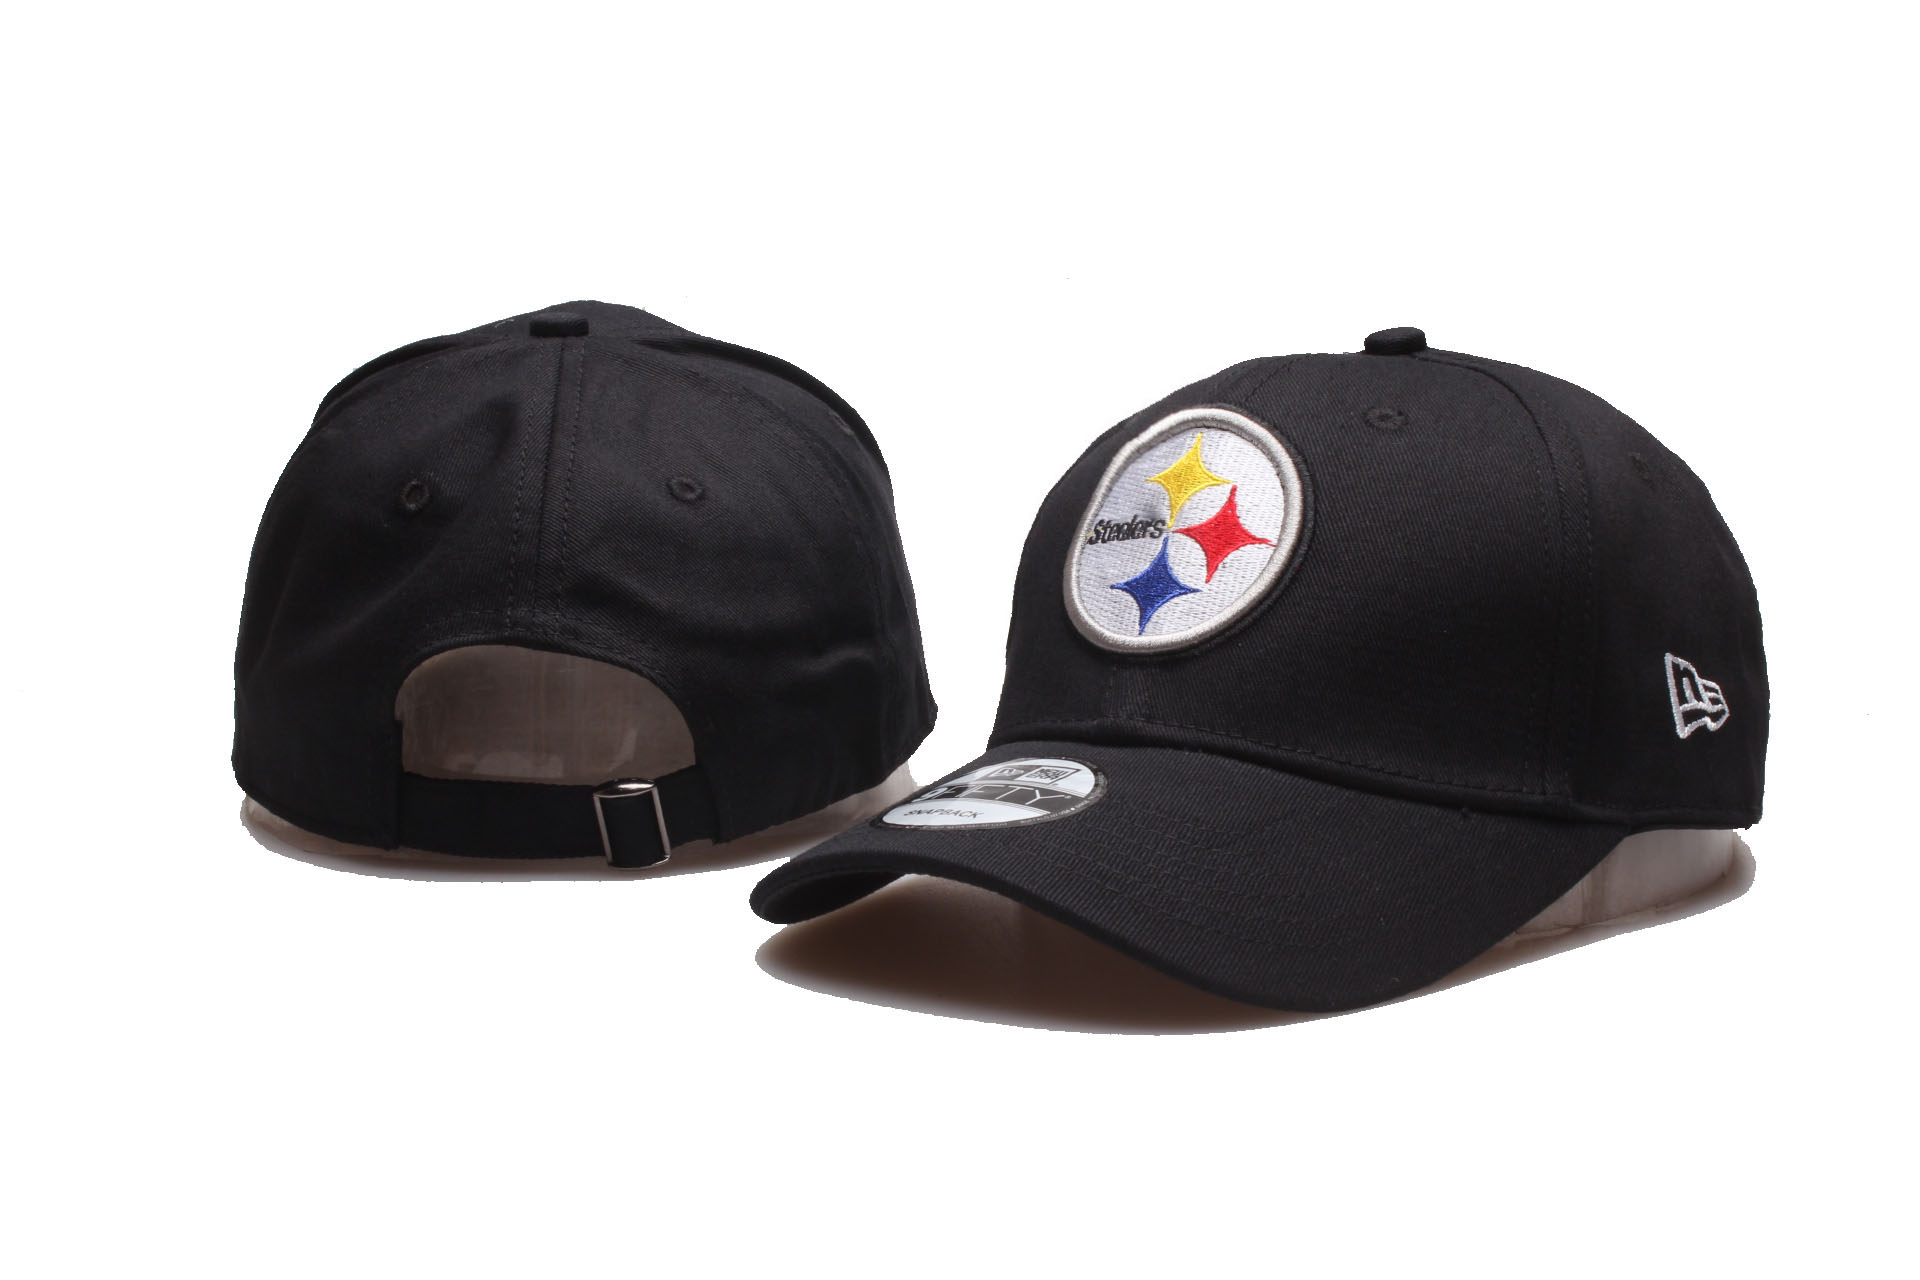 Steelers Team Logo Black Peaked Adjustable Hat YP